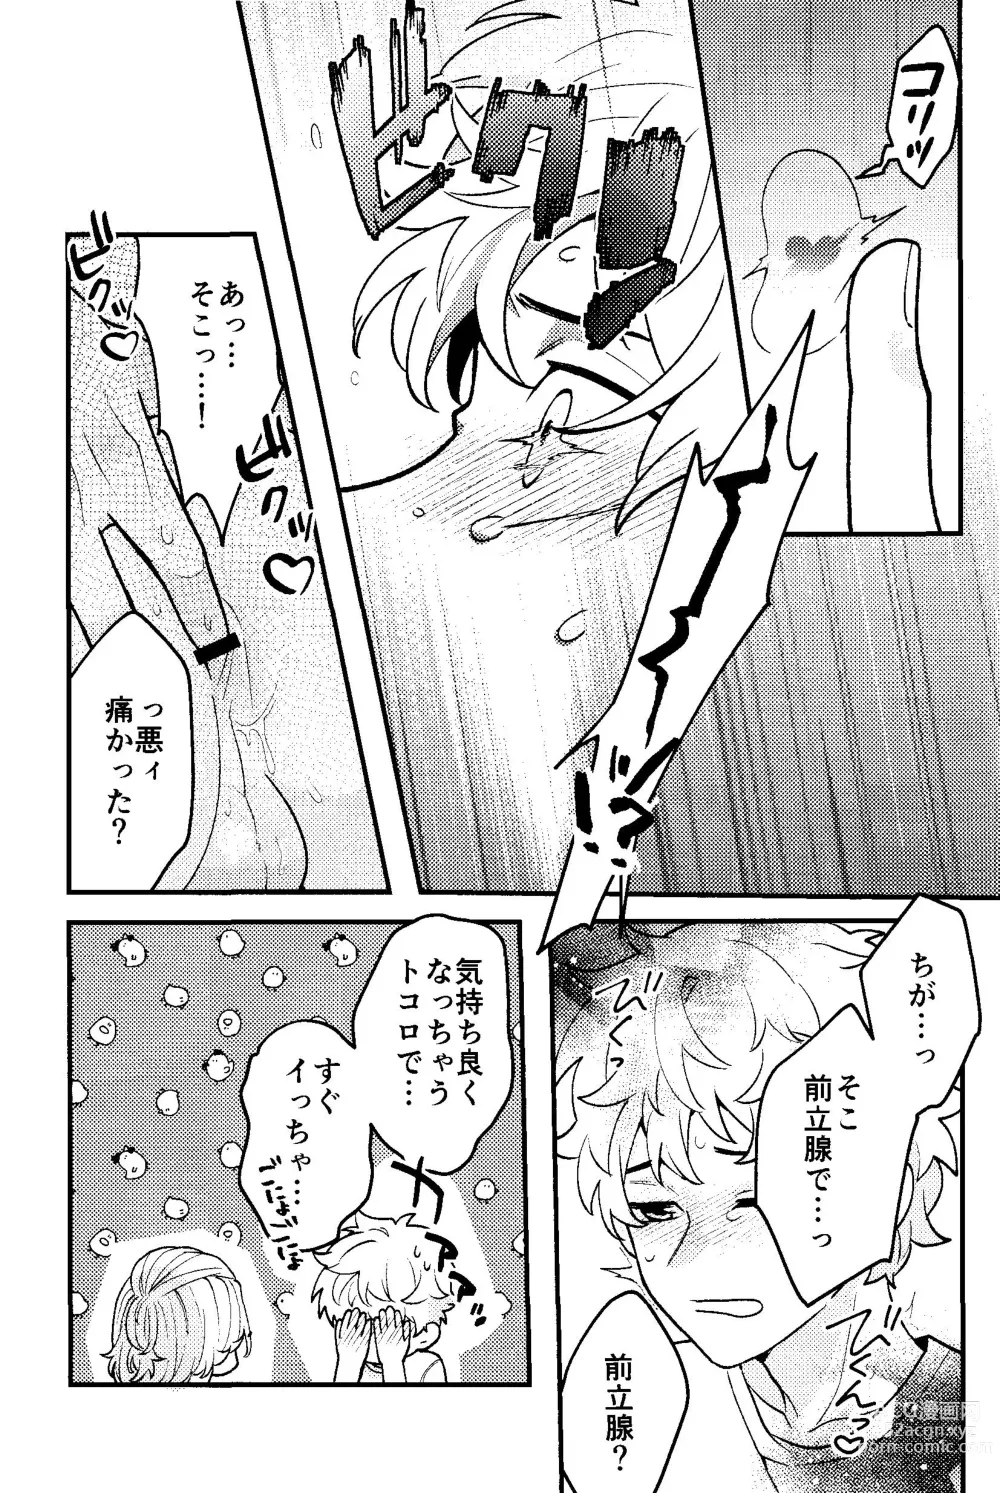 Page 14 of doujinshi Jitsuwa kaihatsu sumidesu